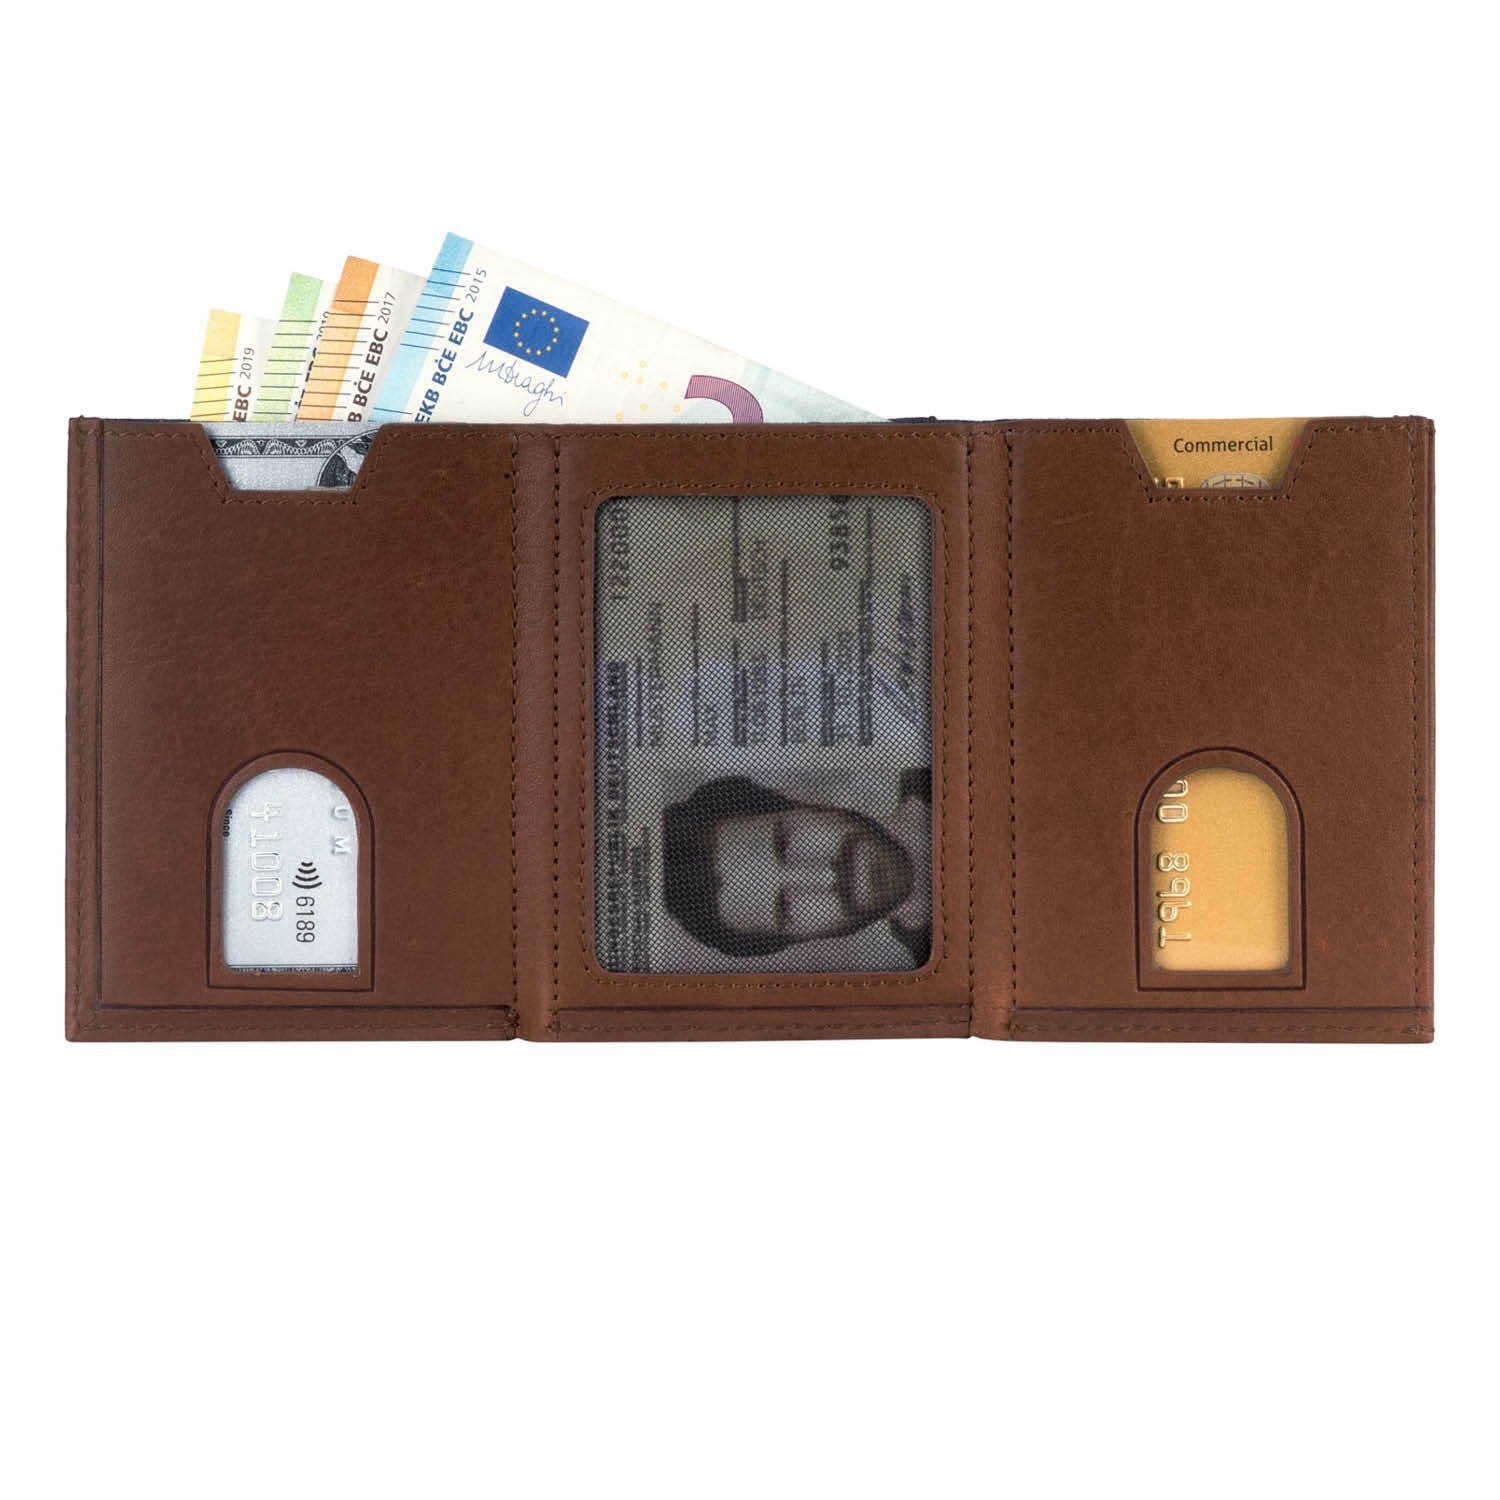 VON HEESEN Geldbörse Whizz Wallet Geldbeutel inkl. Geschenkbox Cognac-Braun Wallet & & RFID-Schutz Mini-Münzfach, Kartenfächer mit Portemonnaie Slim 5